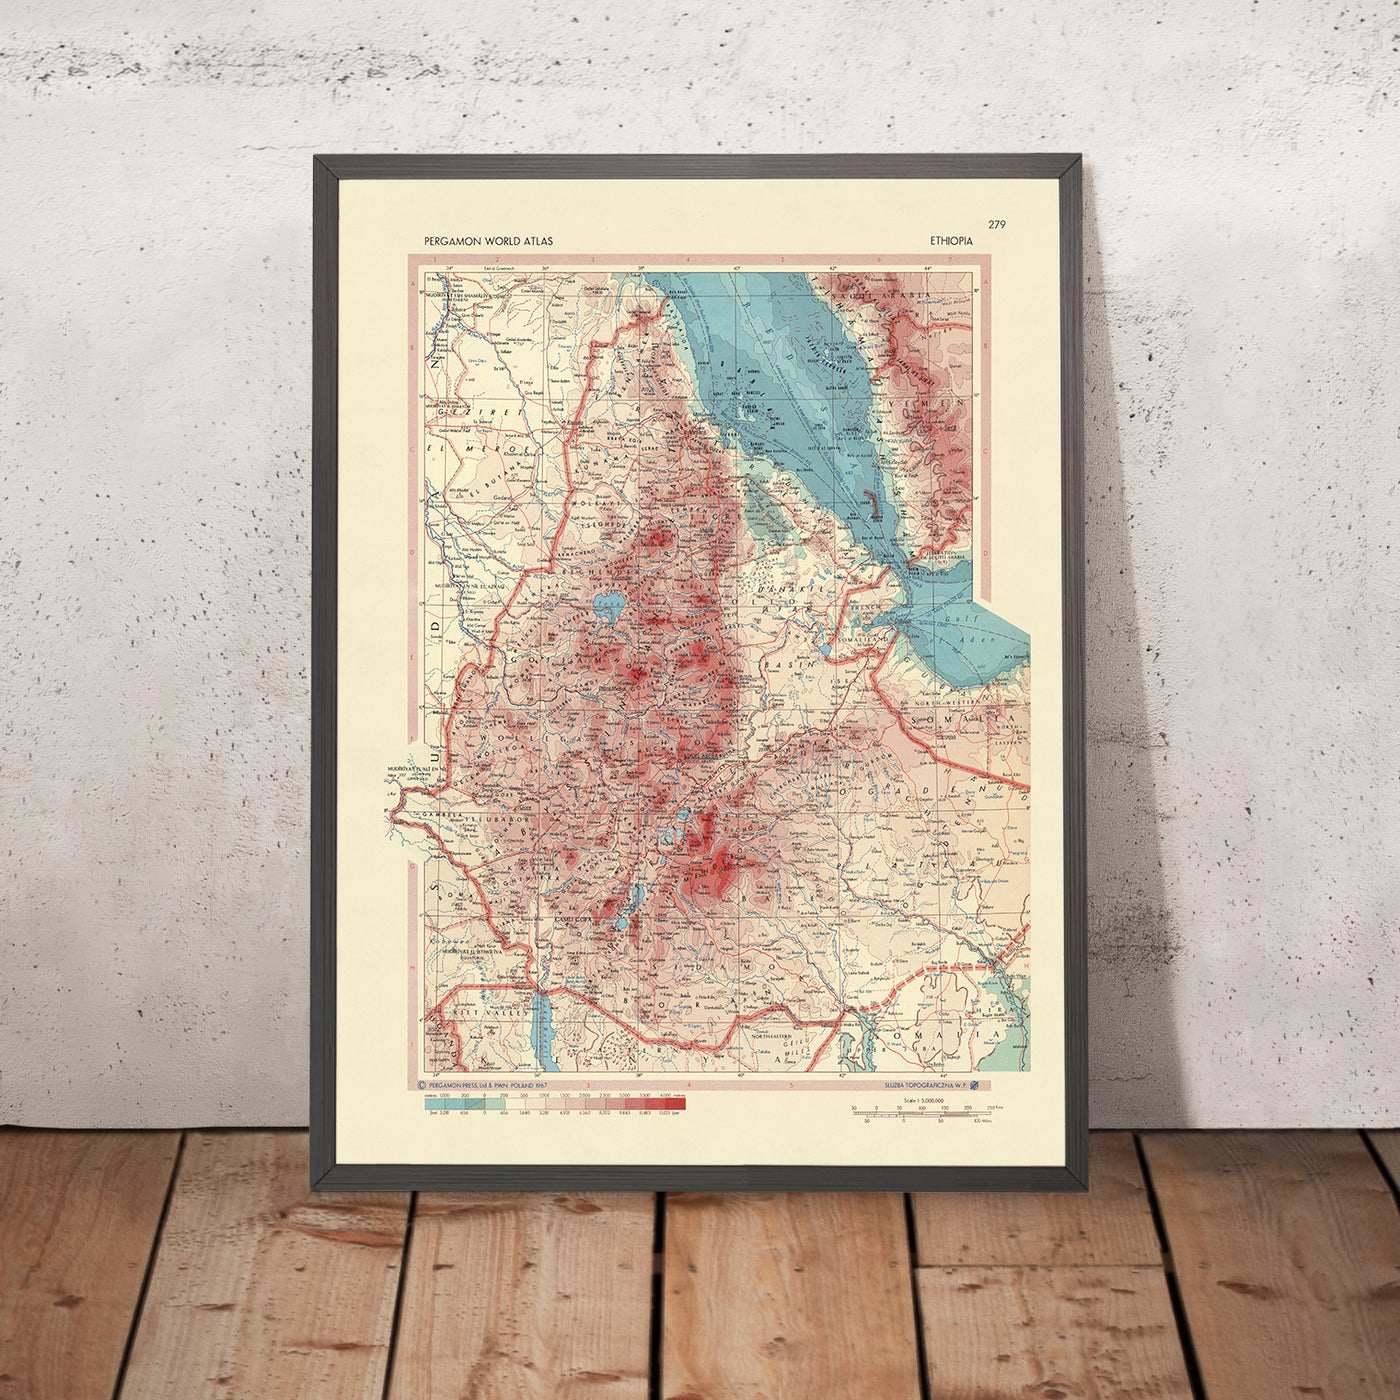 Alte Karte von Äthiopien, 1967: Addis Abeba, Simien-Gebirge, Blauer Nil, äthiopischer Bürgerkrieg, detaillierte politische und physische Karte